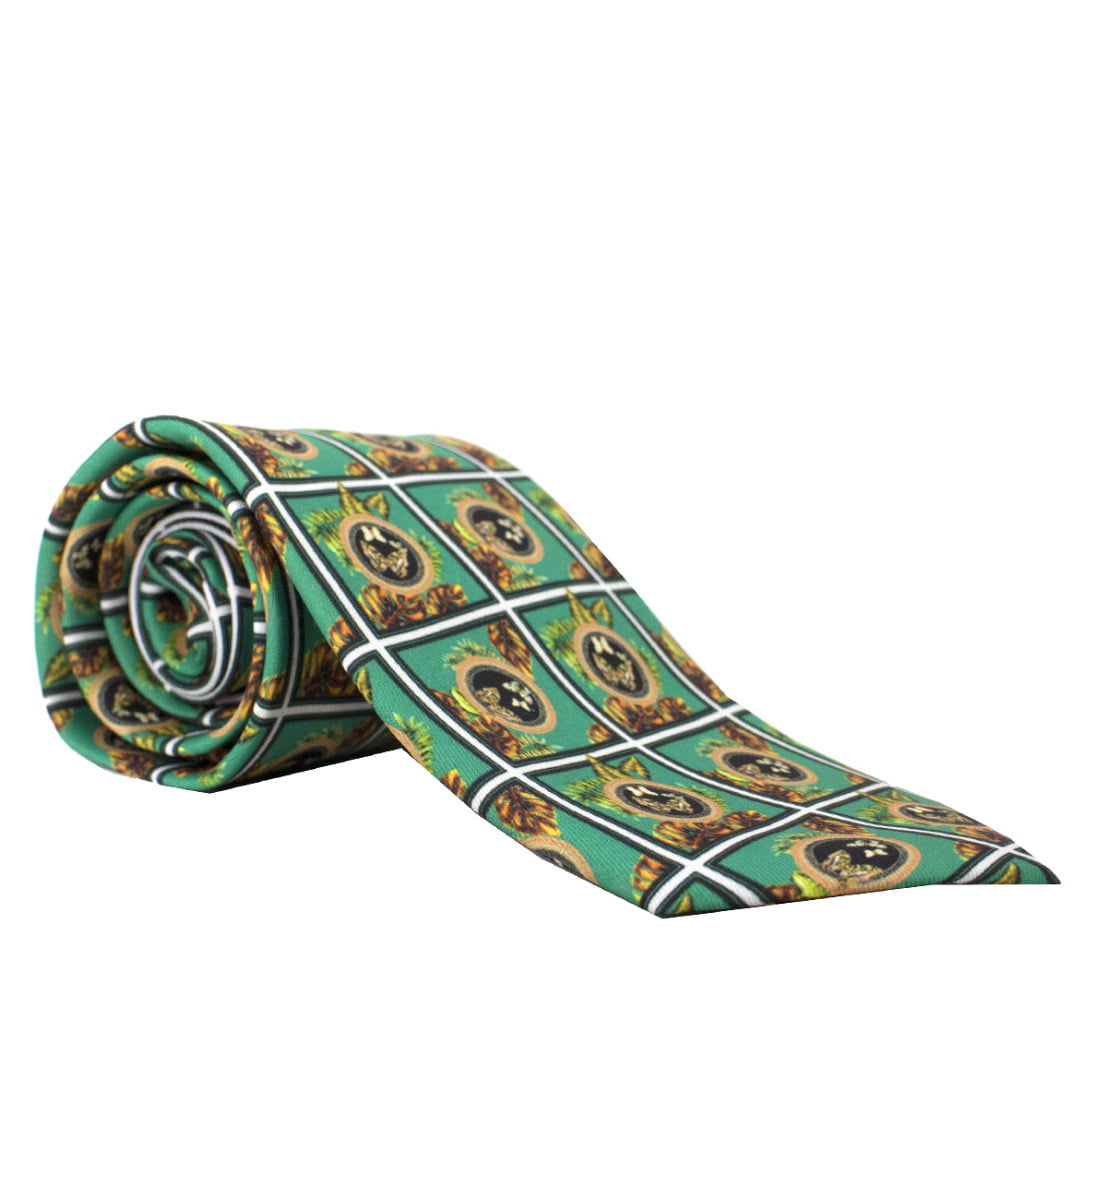 Cravatta uomo verde fantasia simil versace compresa di pochette abbinata